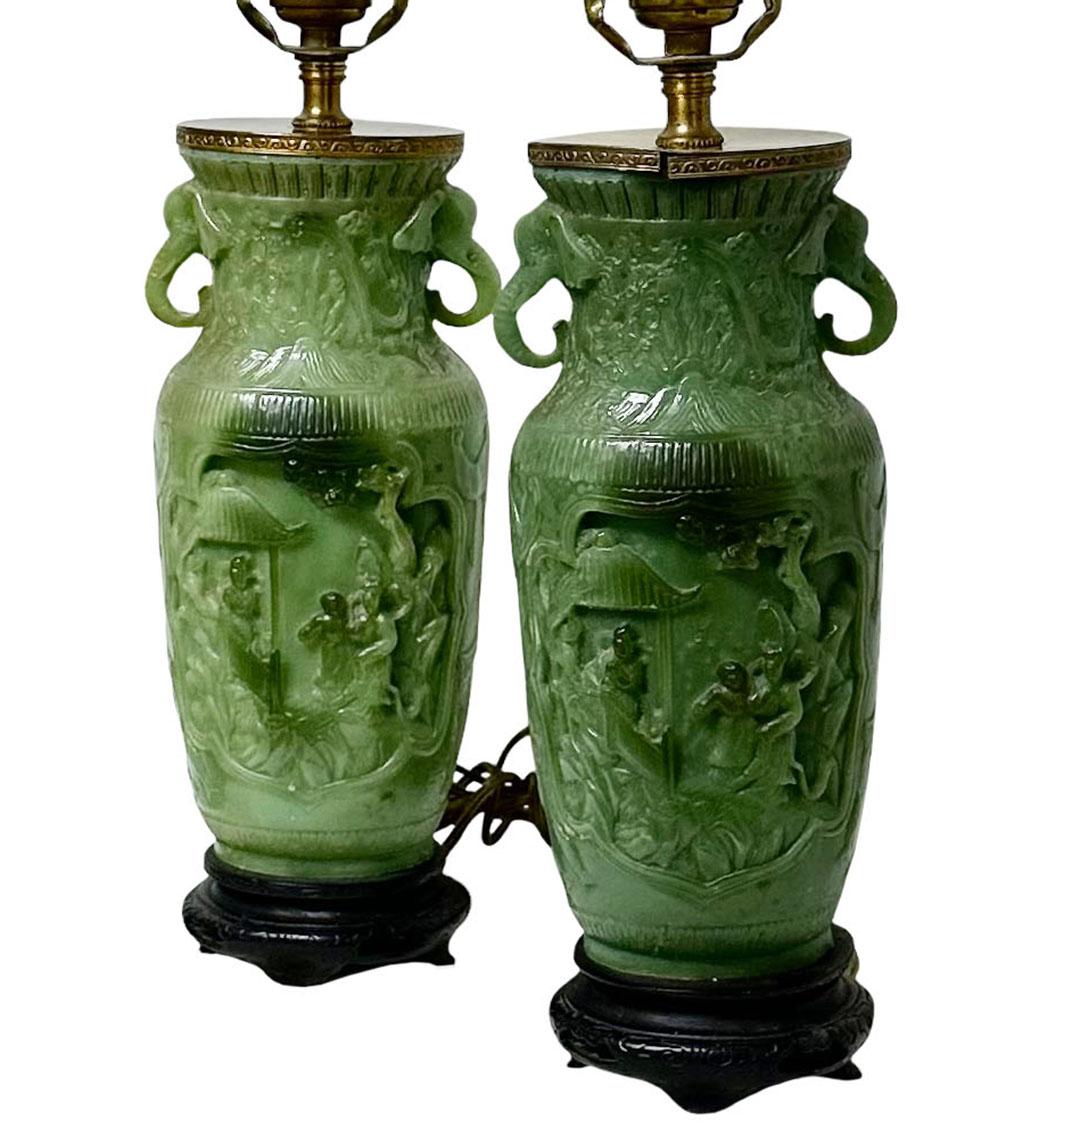 La paire de lampes vertes n'est pas en jade, mais elle est fabriquée pour ressembler à du jade et est dans le goût des Chinois. Il s'agit d'une composition magnifiquement réalisée avec des éléphants sur les côtés et une scène de tribunal au milieu.